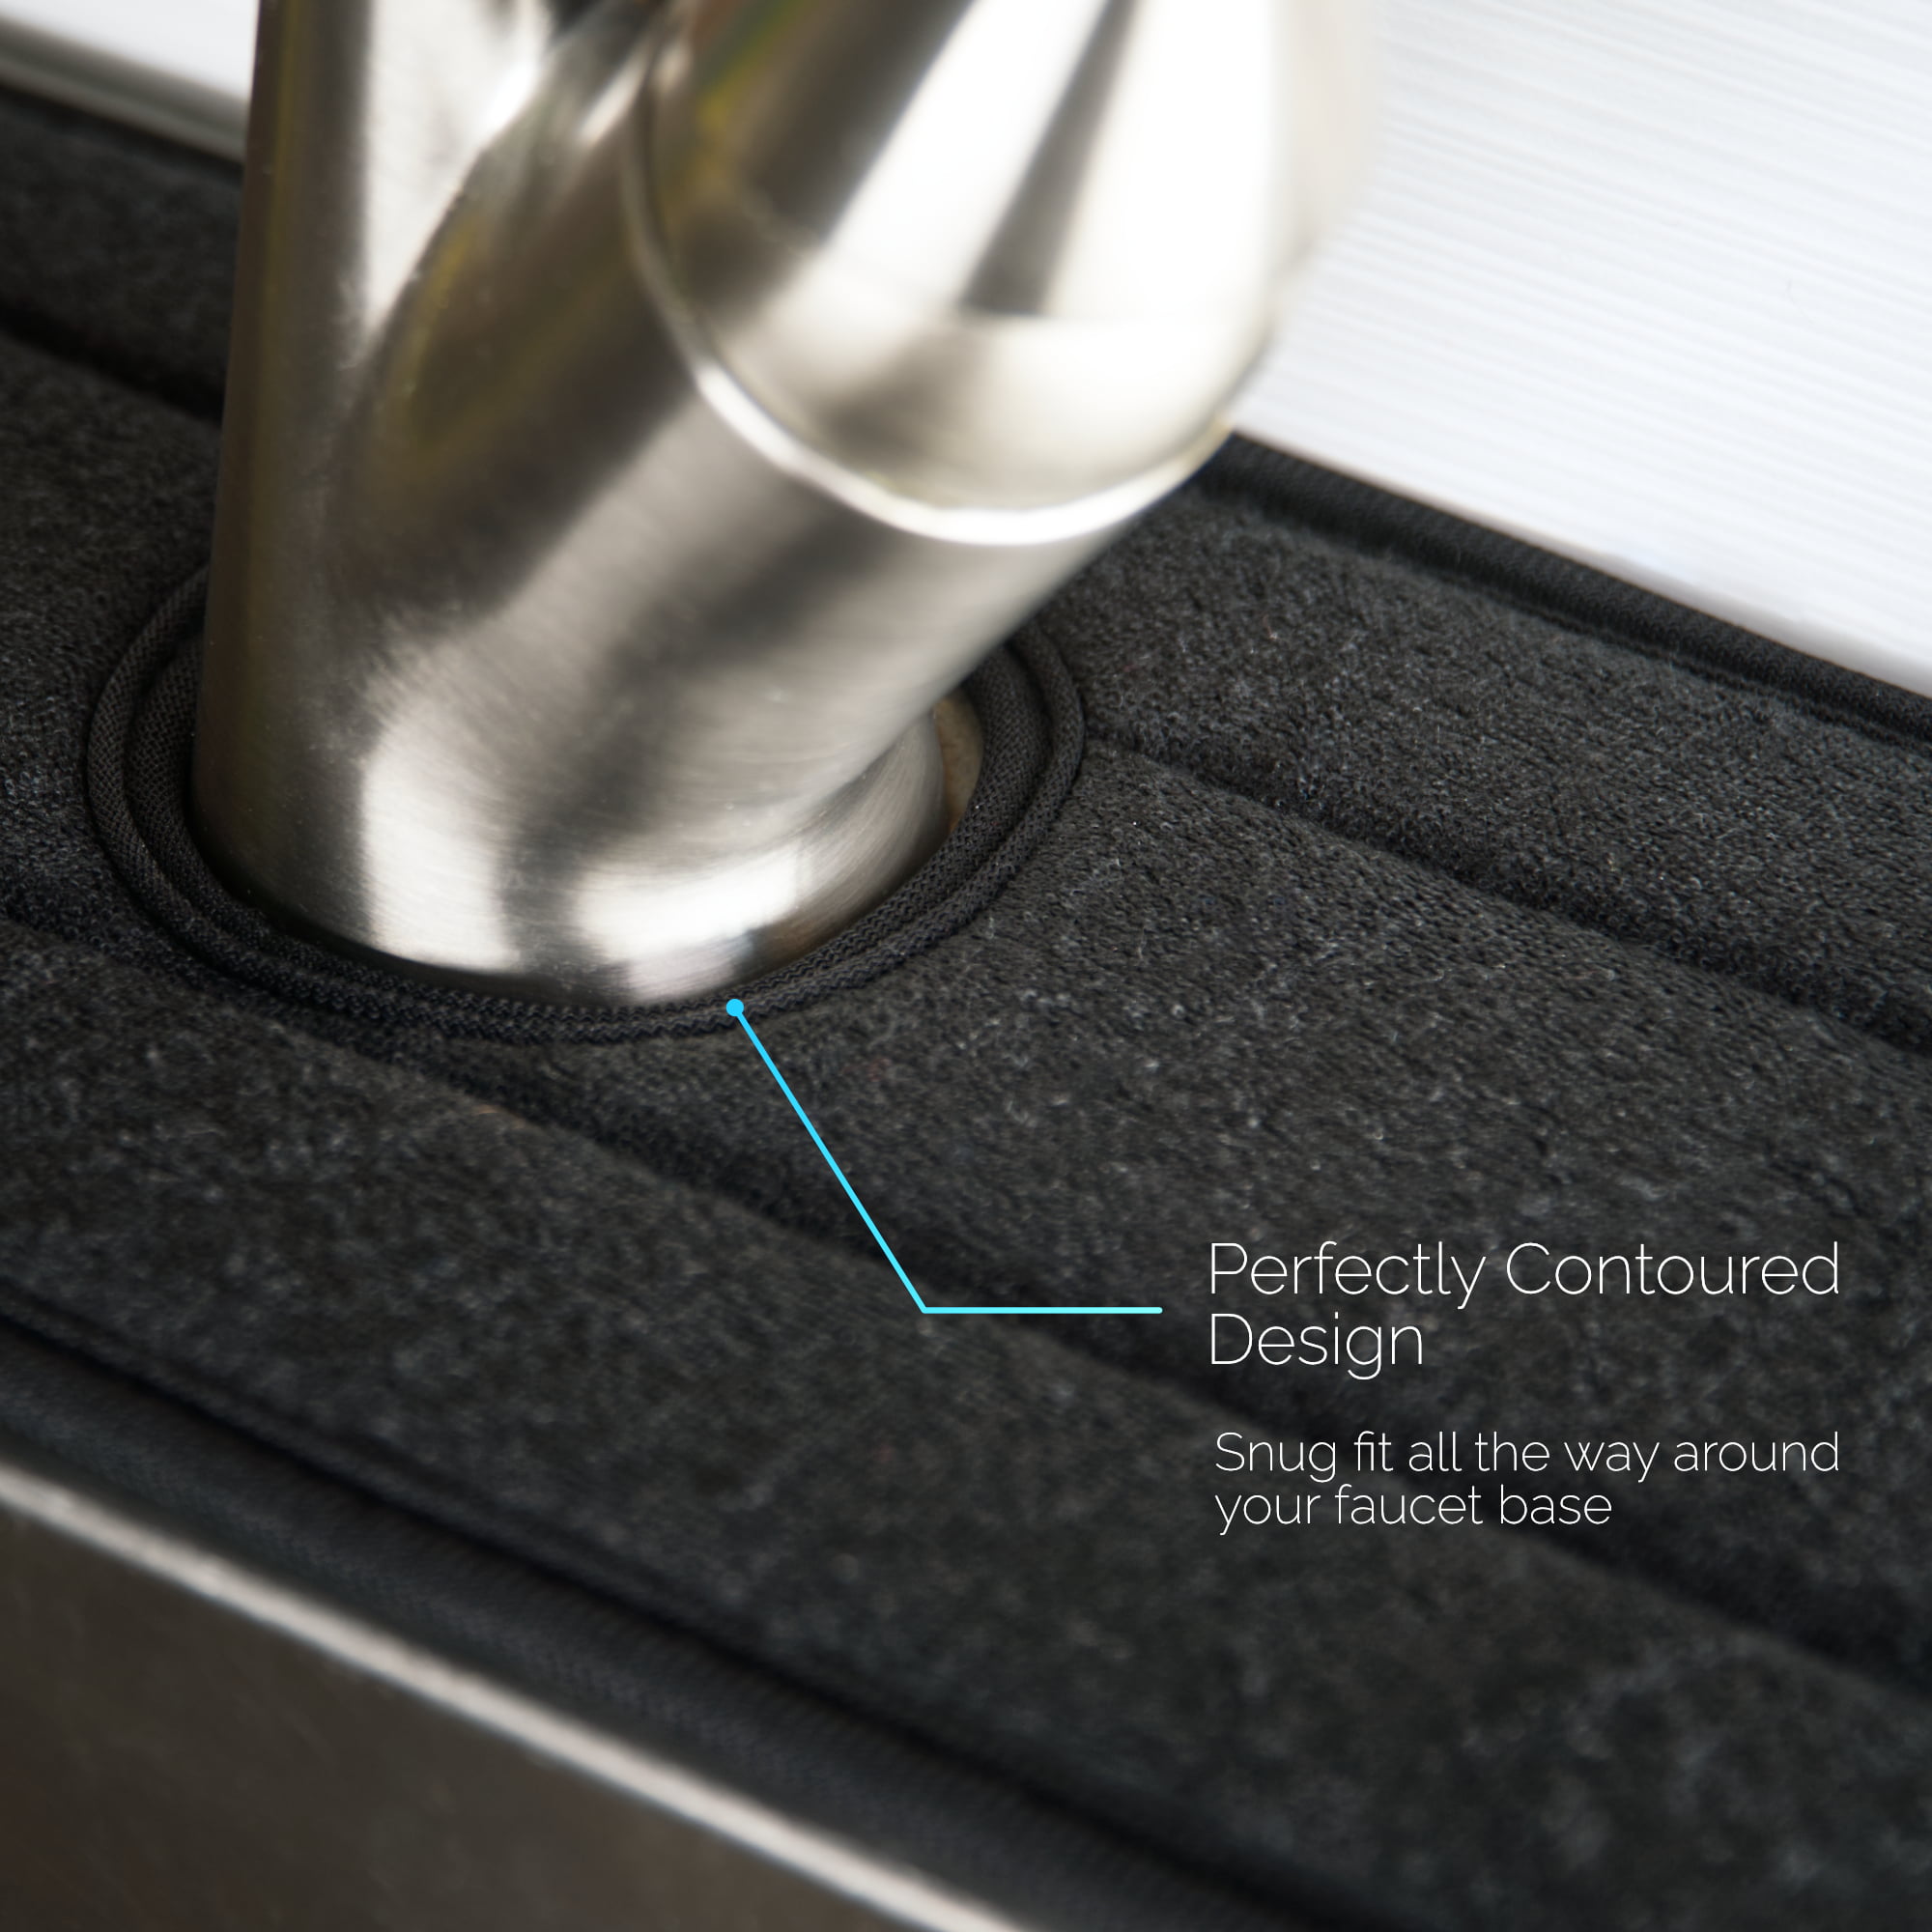 Ternal ternal sinkmat for kitchen sink faucet, absorbent diatom